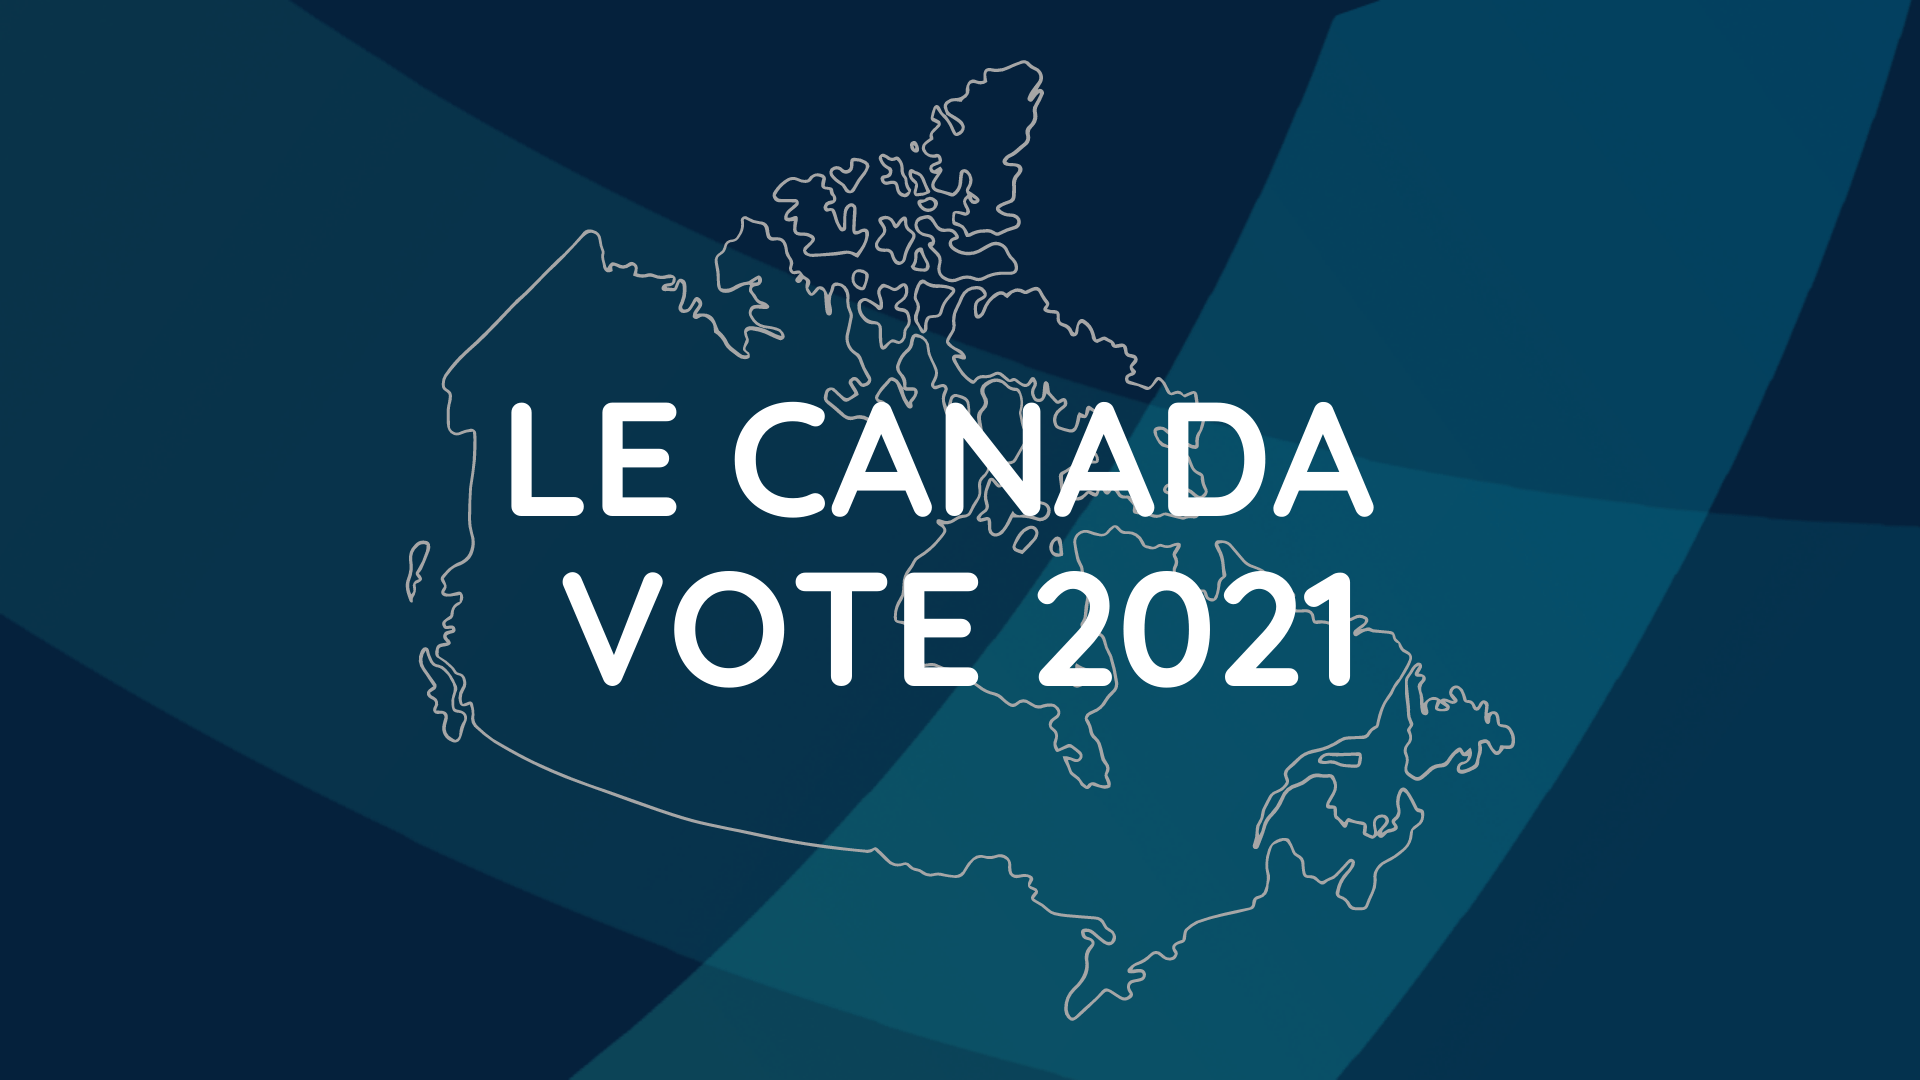 Le Canada vote 2021